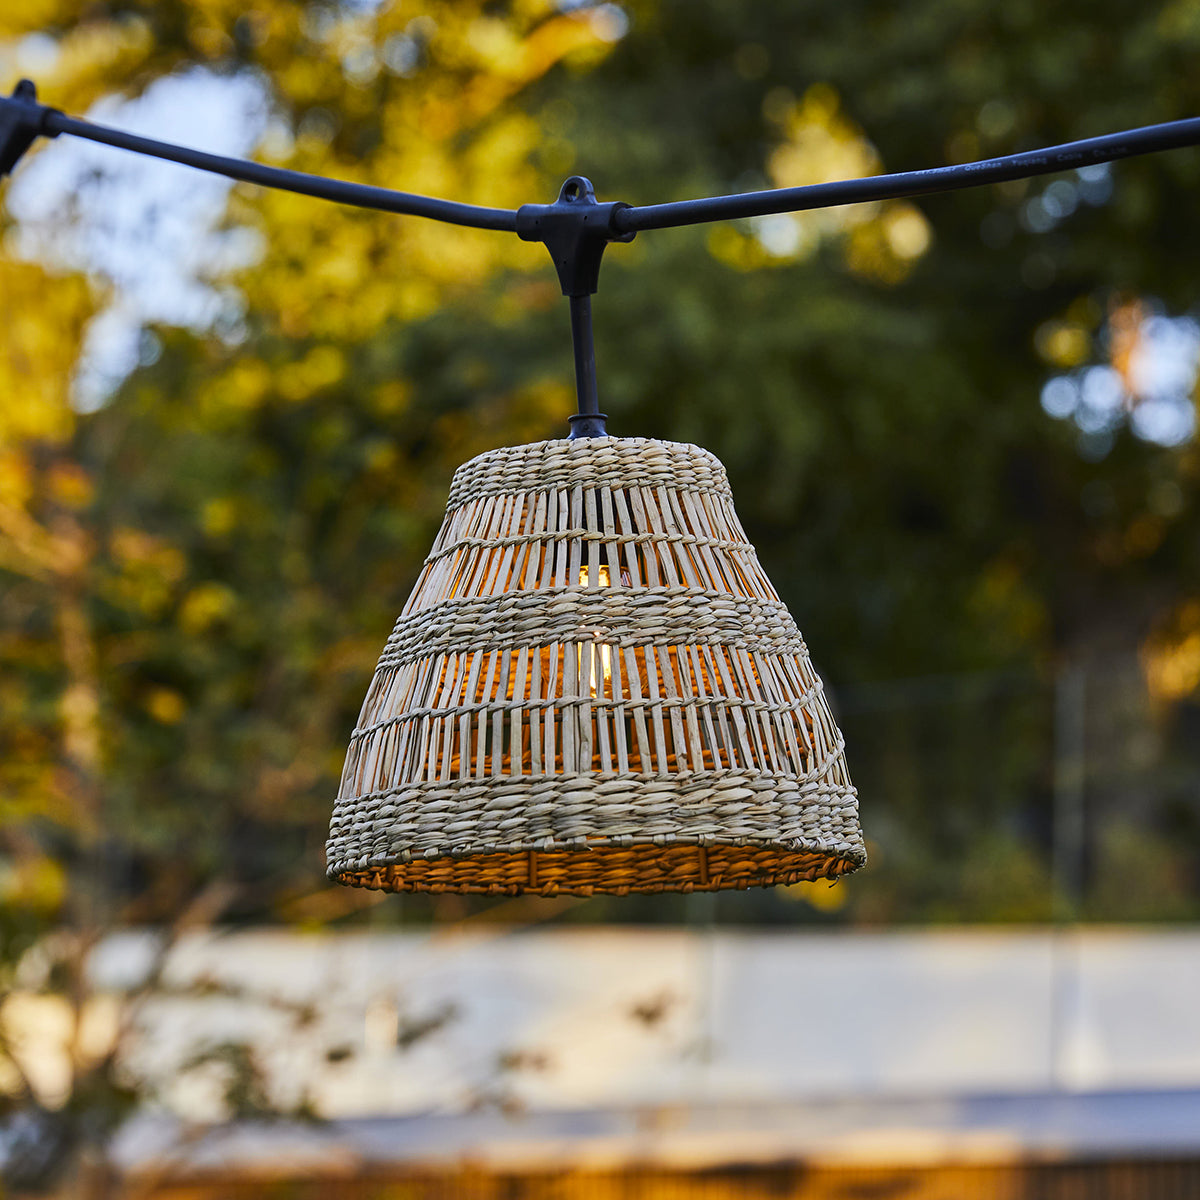 Guirlande lumineuse raccordable d'extérieur avec abat-jour en herbe marine style bohème 7 ampoules à filament douille E27 LED blanc chaud TESSA LIGHT 6m